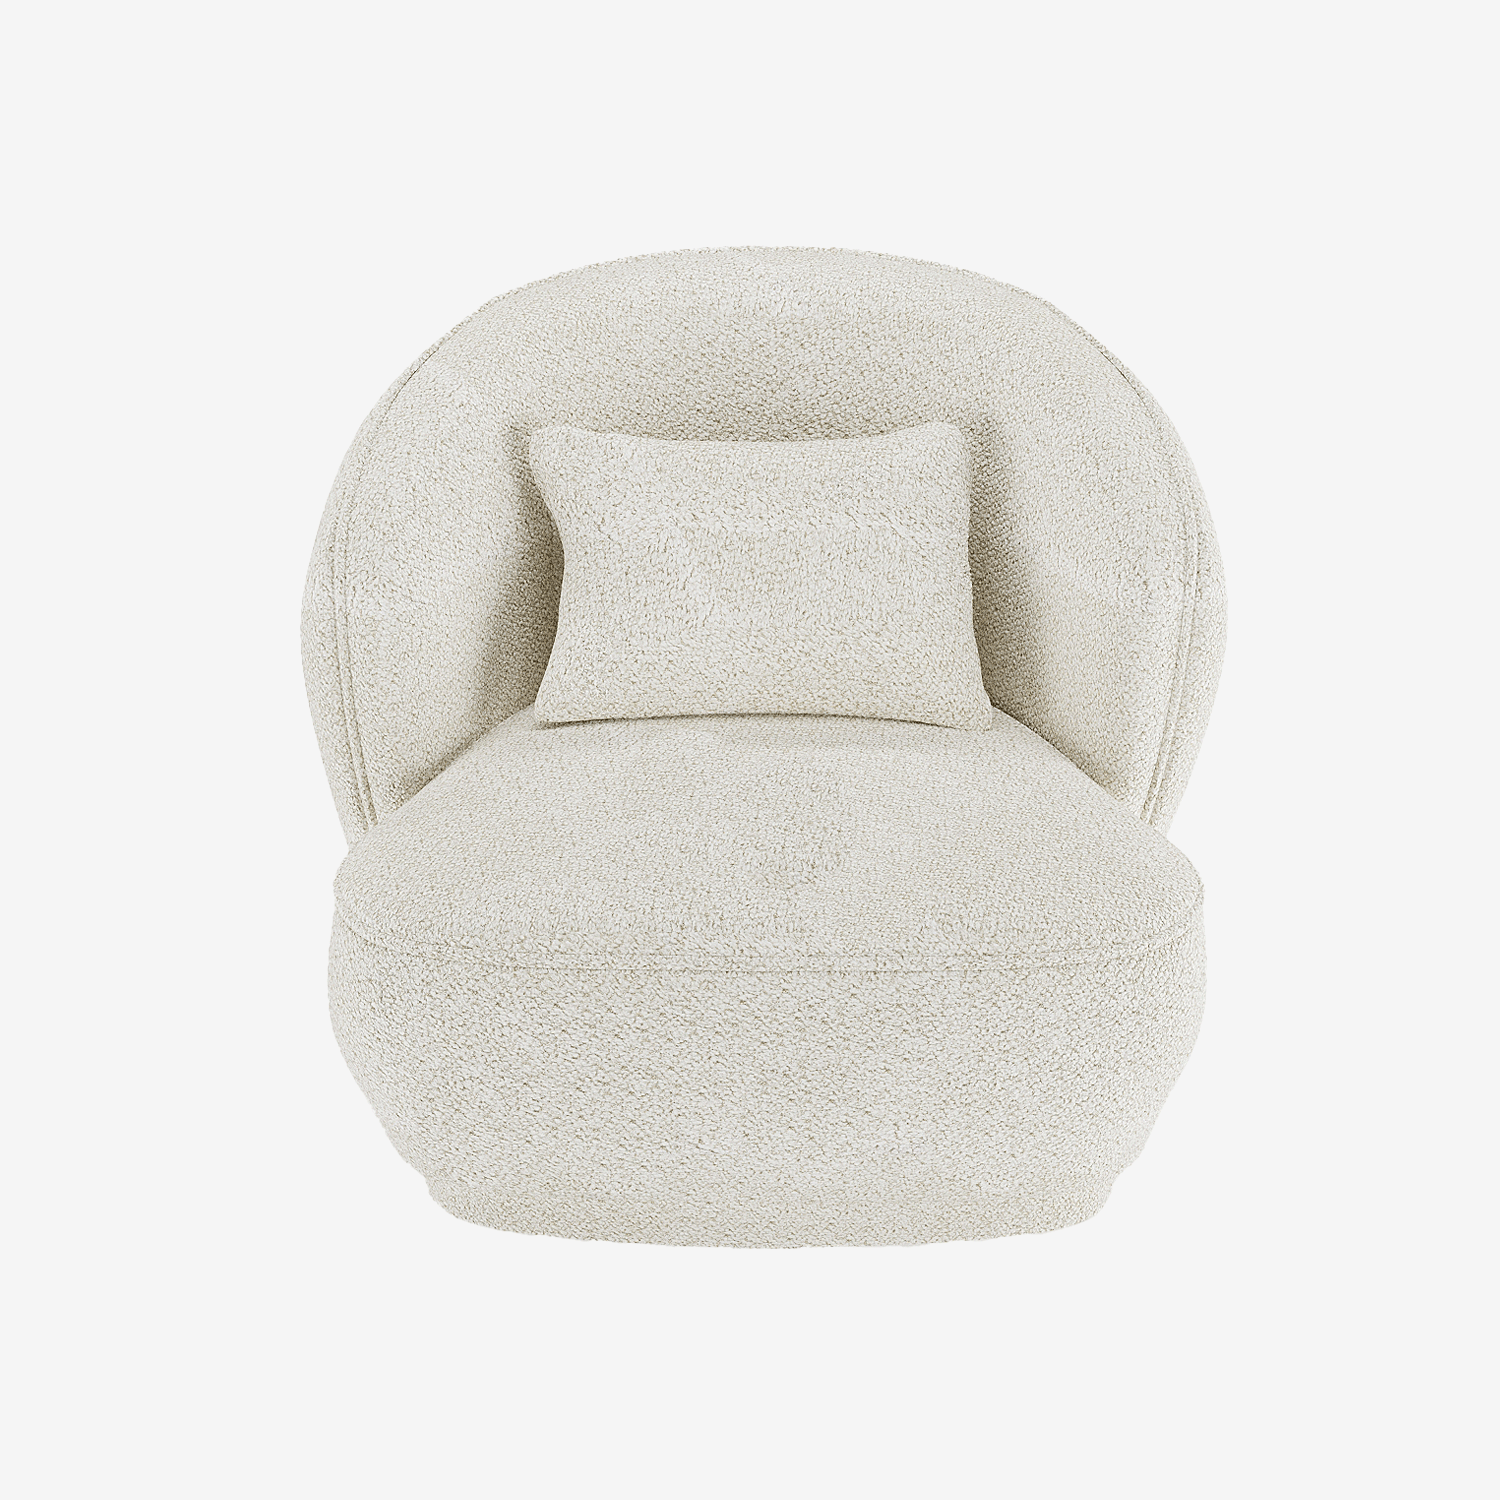 Fauteuil design bouclé blanc - Potiron Paris, la satisfaction du fauteuil design et confortable pas cher